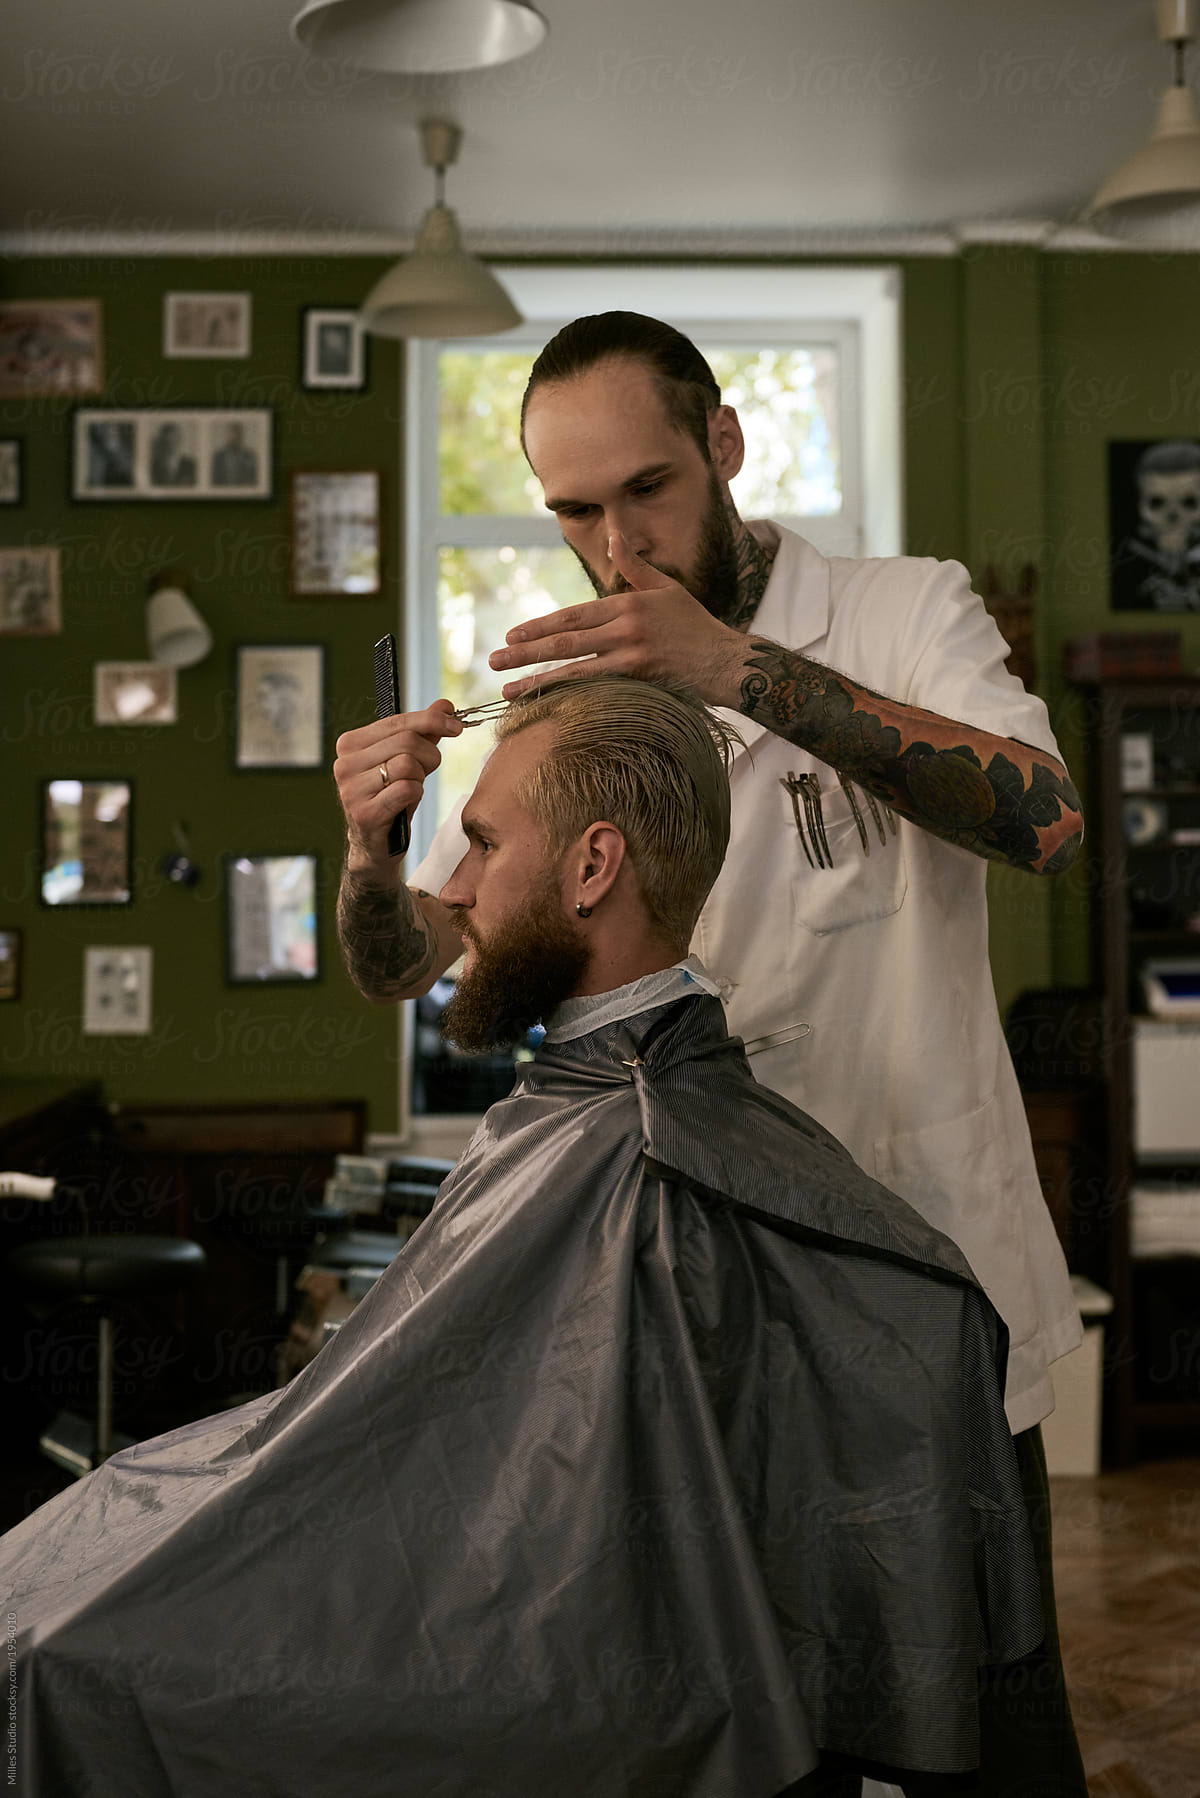 Barber preparing man for haircut